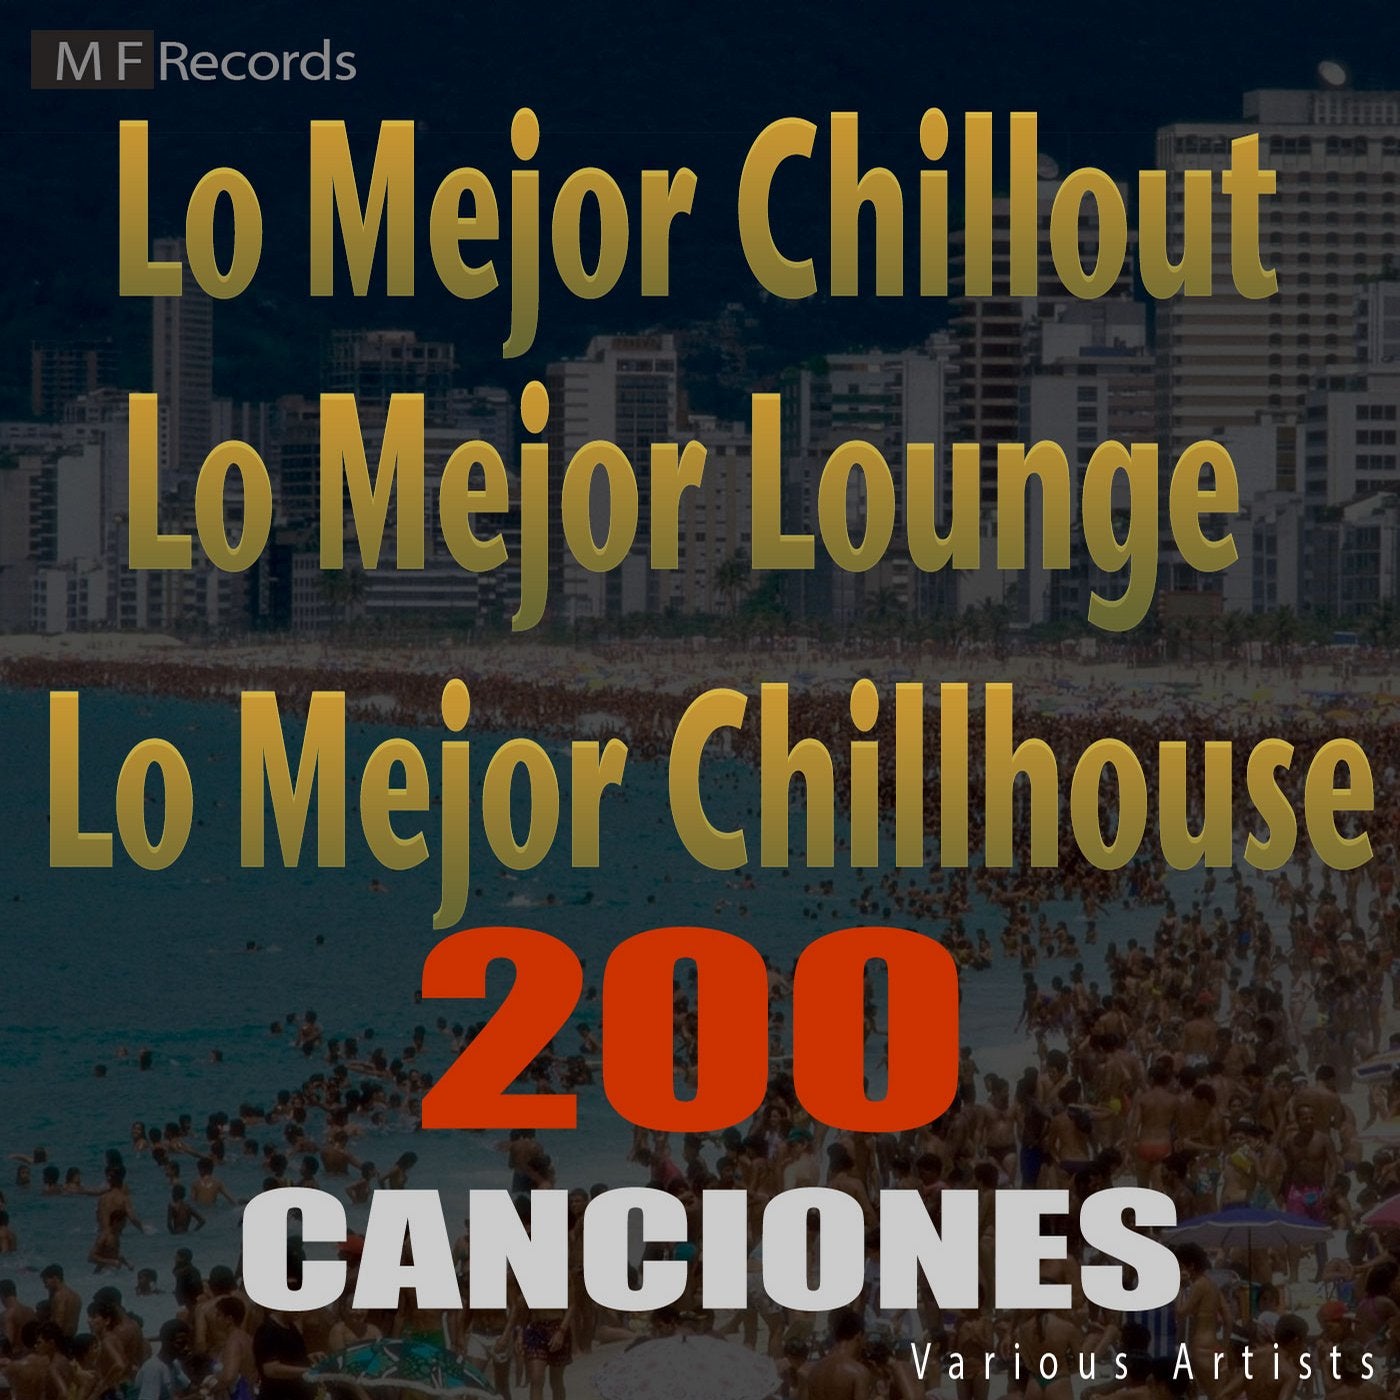 Lo Mejor Chillout Lo Mejor Lounge Lo Mejor Chillhouse 200 Canciones